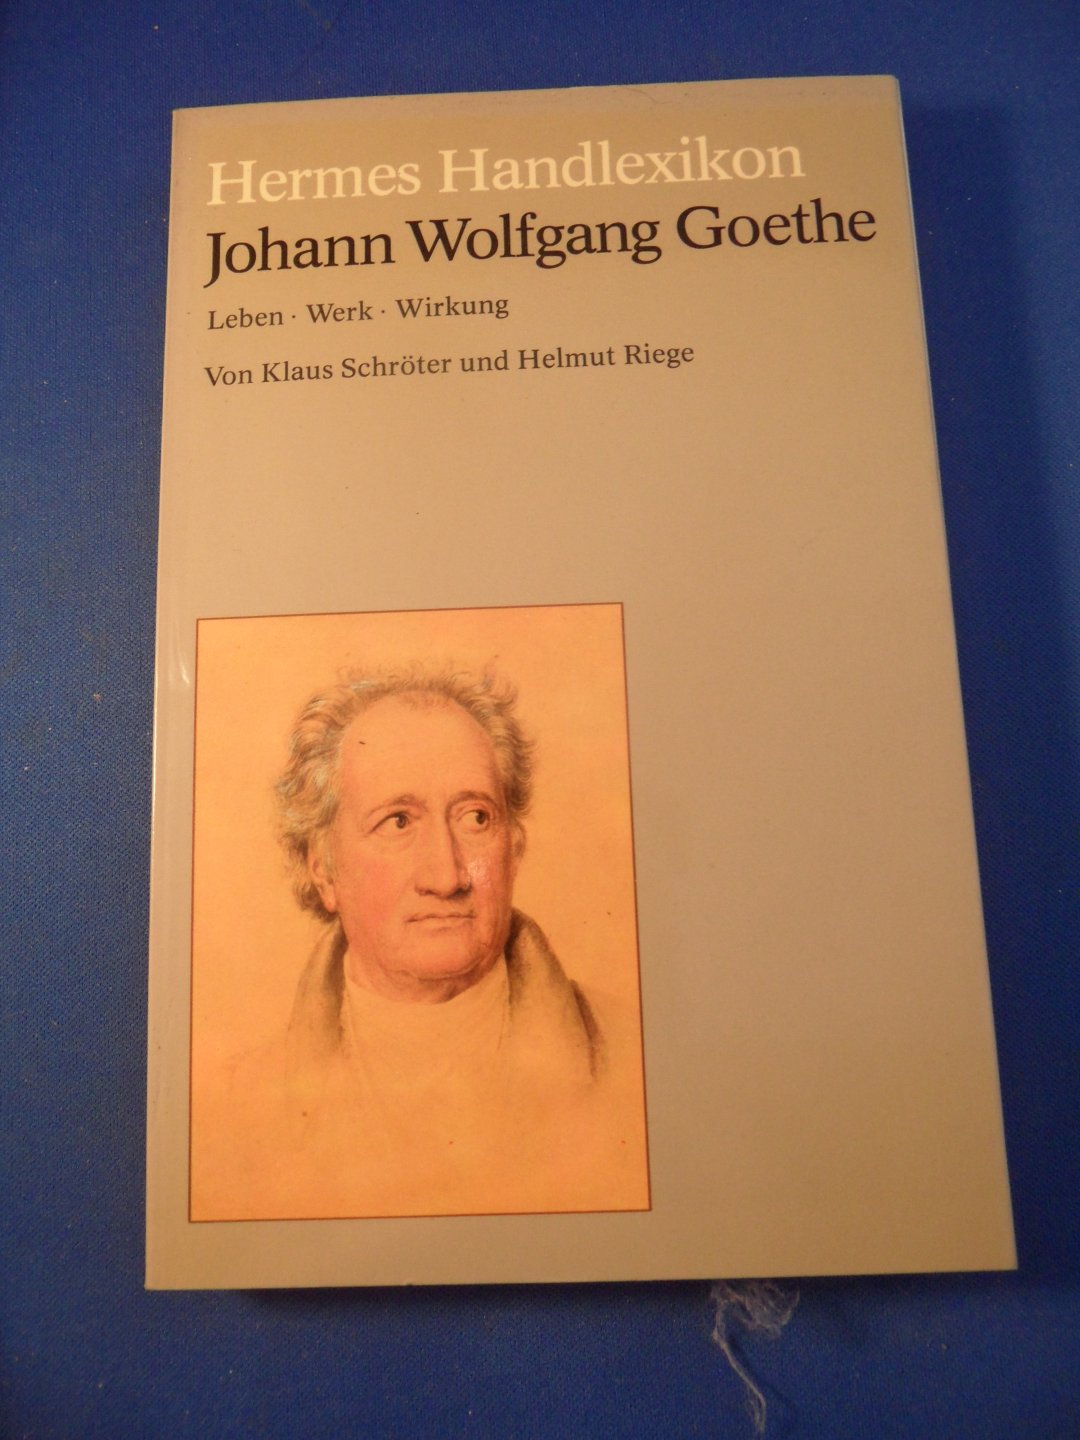 Schröter, Klaus und Riege, Helmut - Hermes Handlexikon. Johann Wolfgang Goethe. Leben, Werk, Wirkung